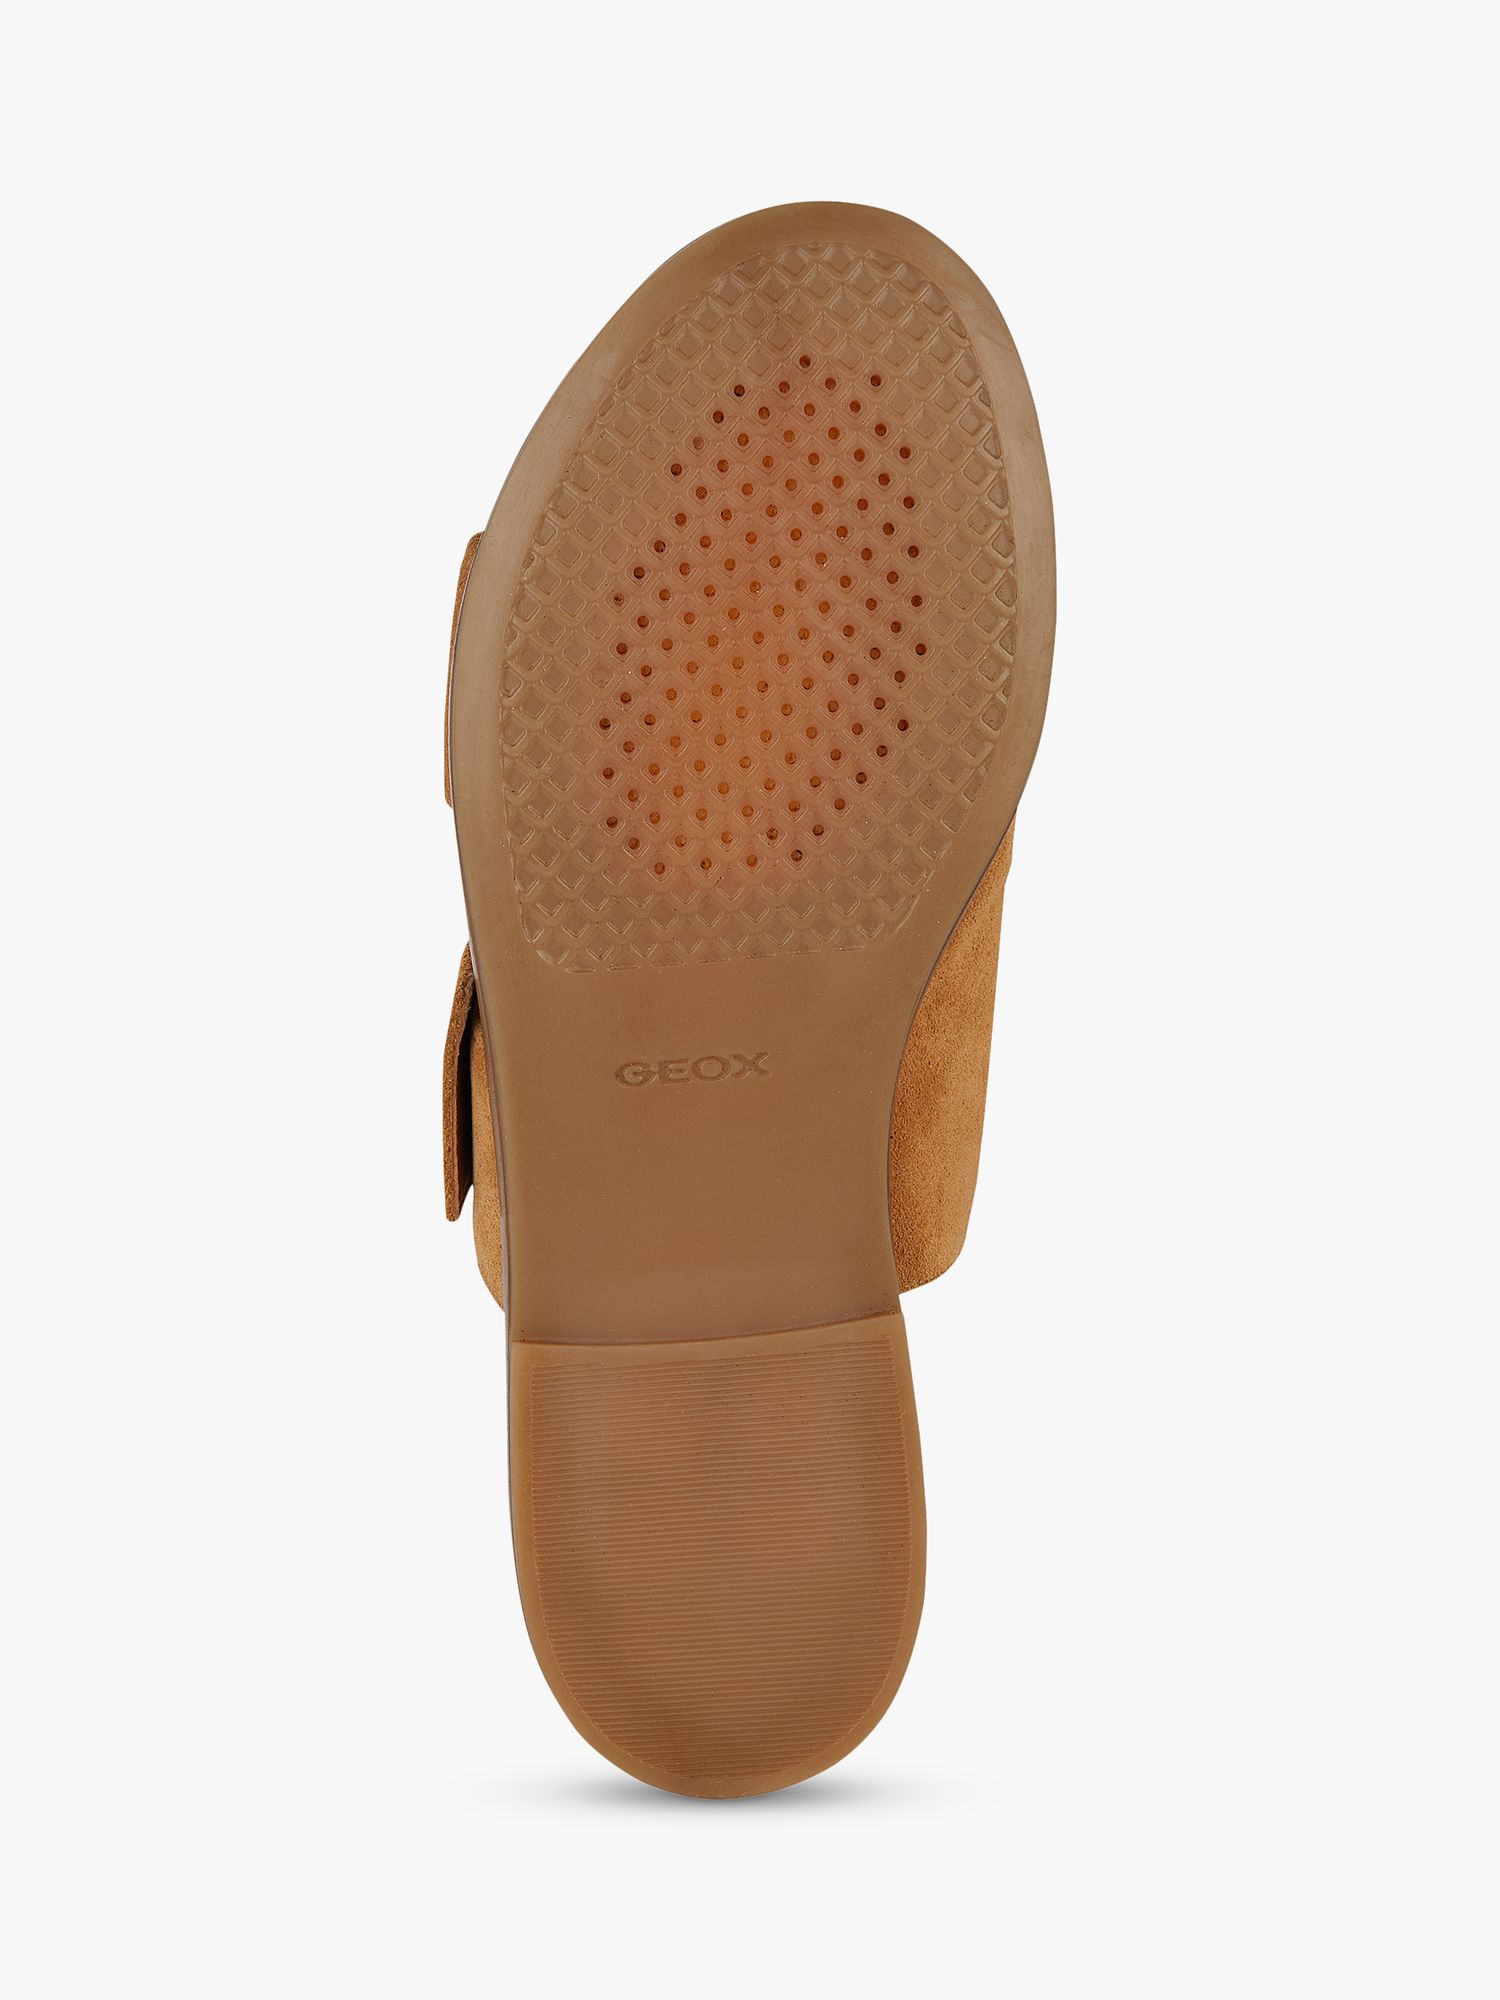 Geox Naileen Suede Flat Sandals, Cognac, EU37